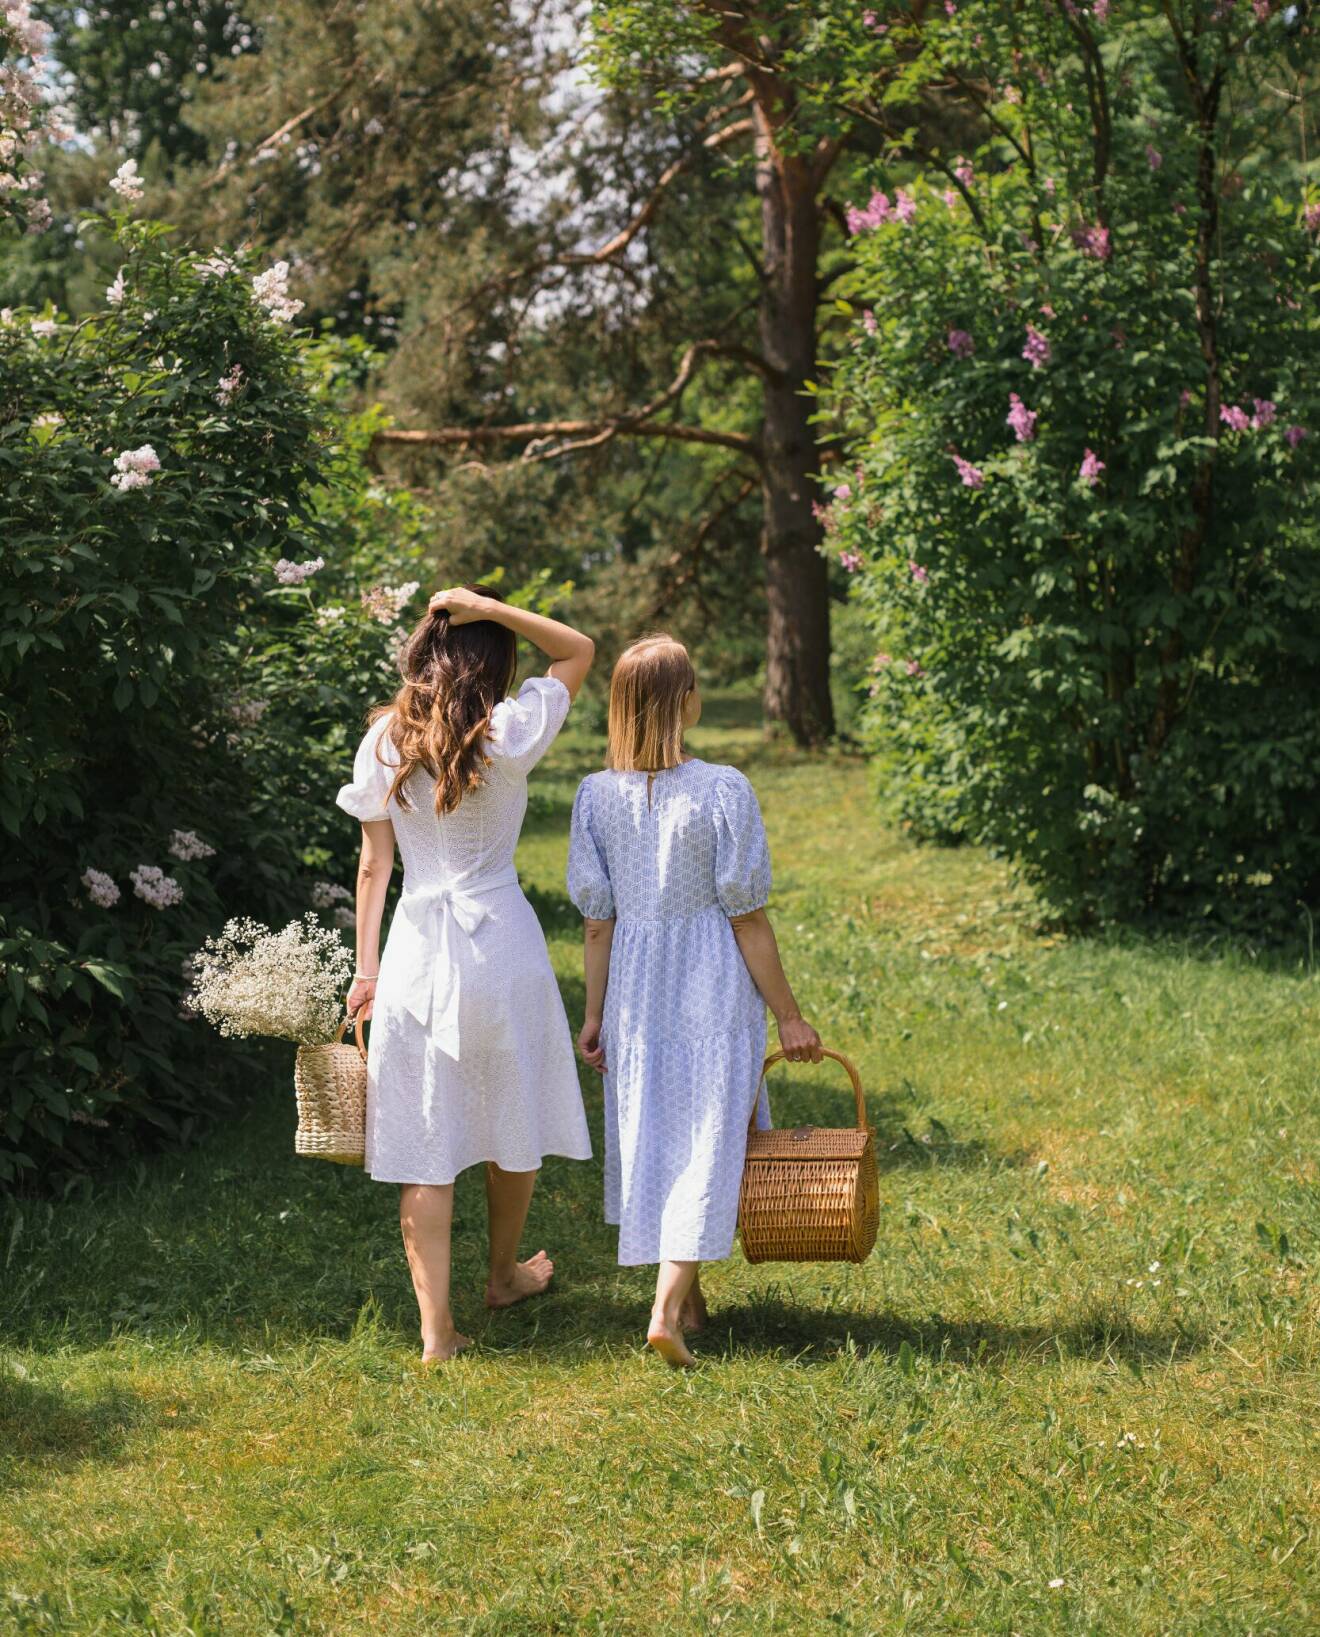 Två kvinnor går barfota i gräset med picknickkorg i handen.